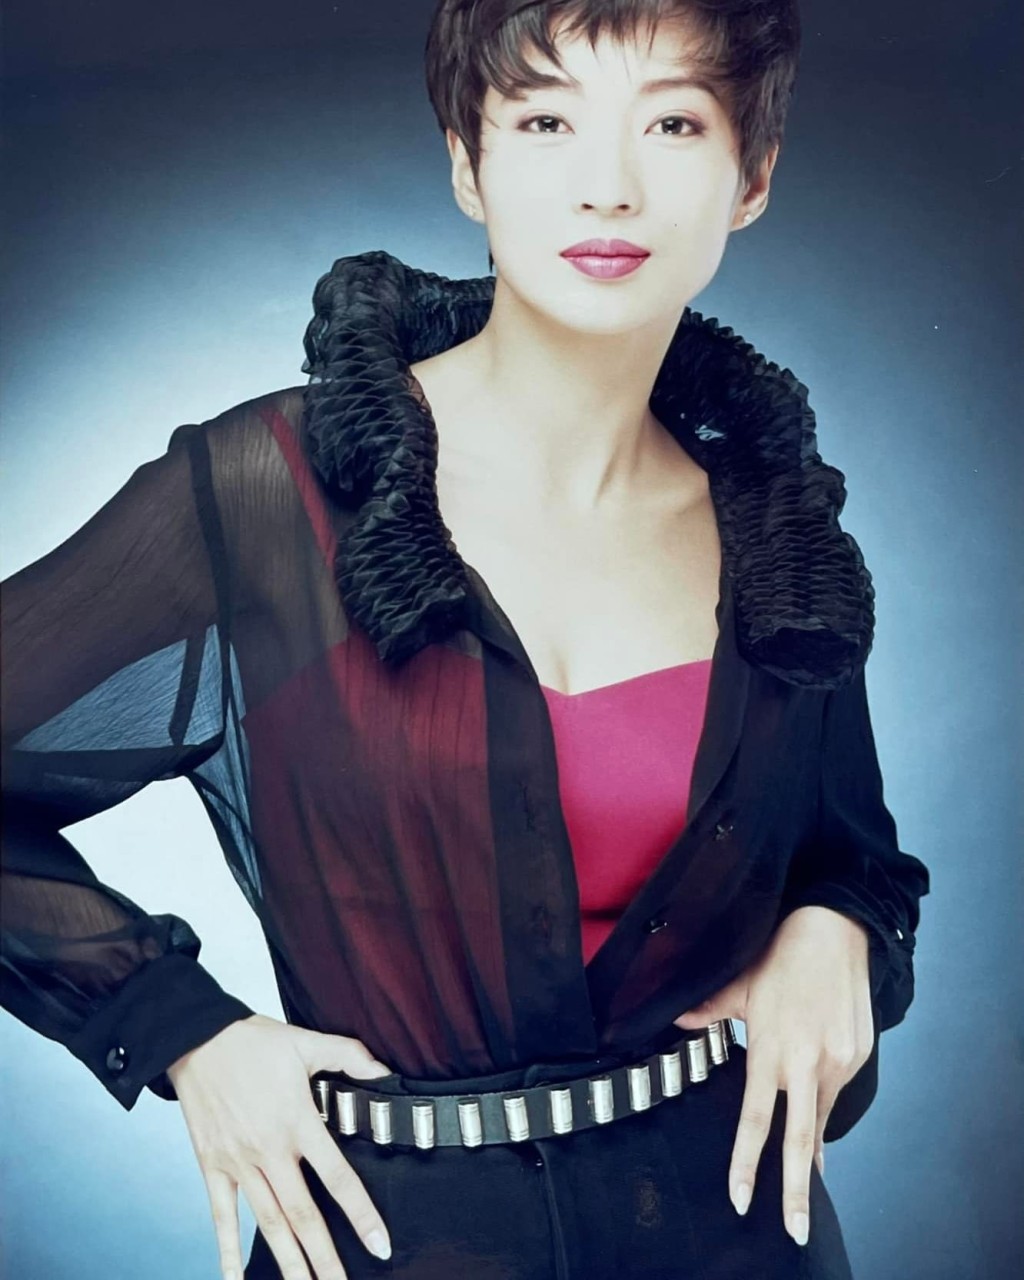 温翠苹在1989年参加环球中国小姐选美并获得第二名。